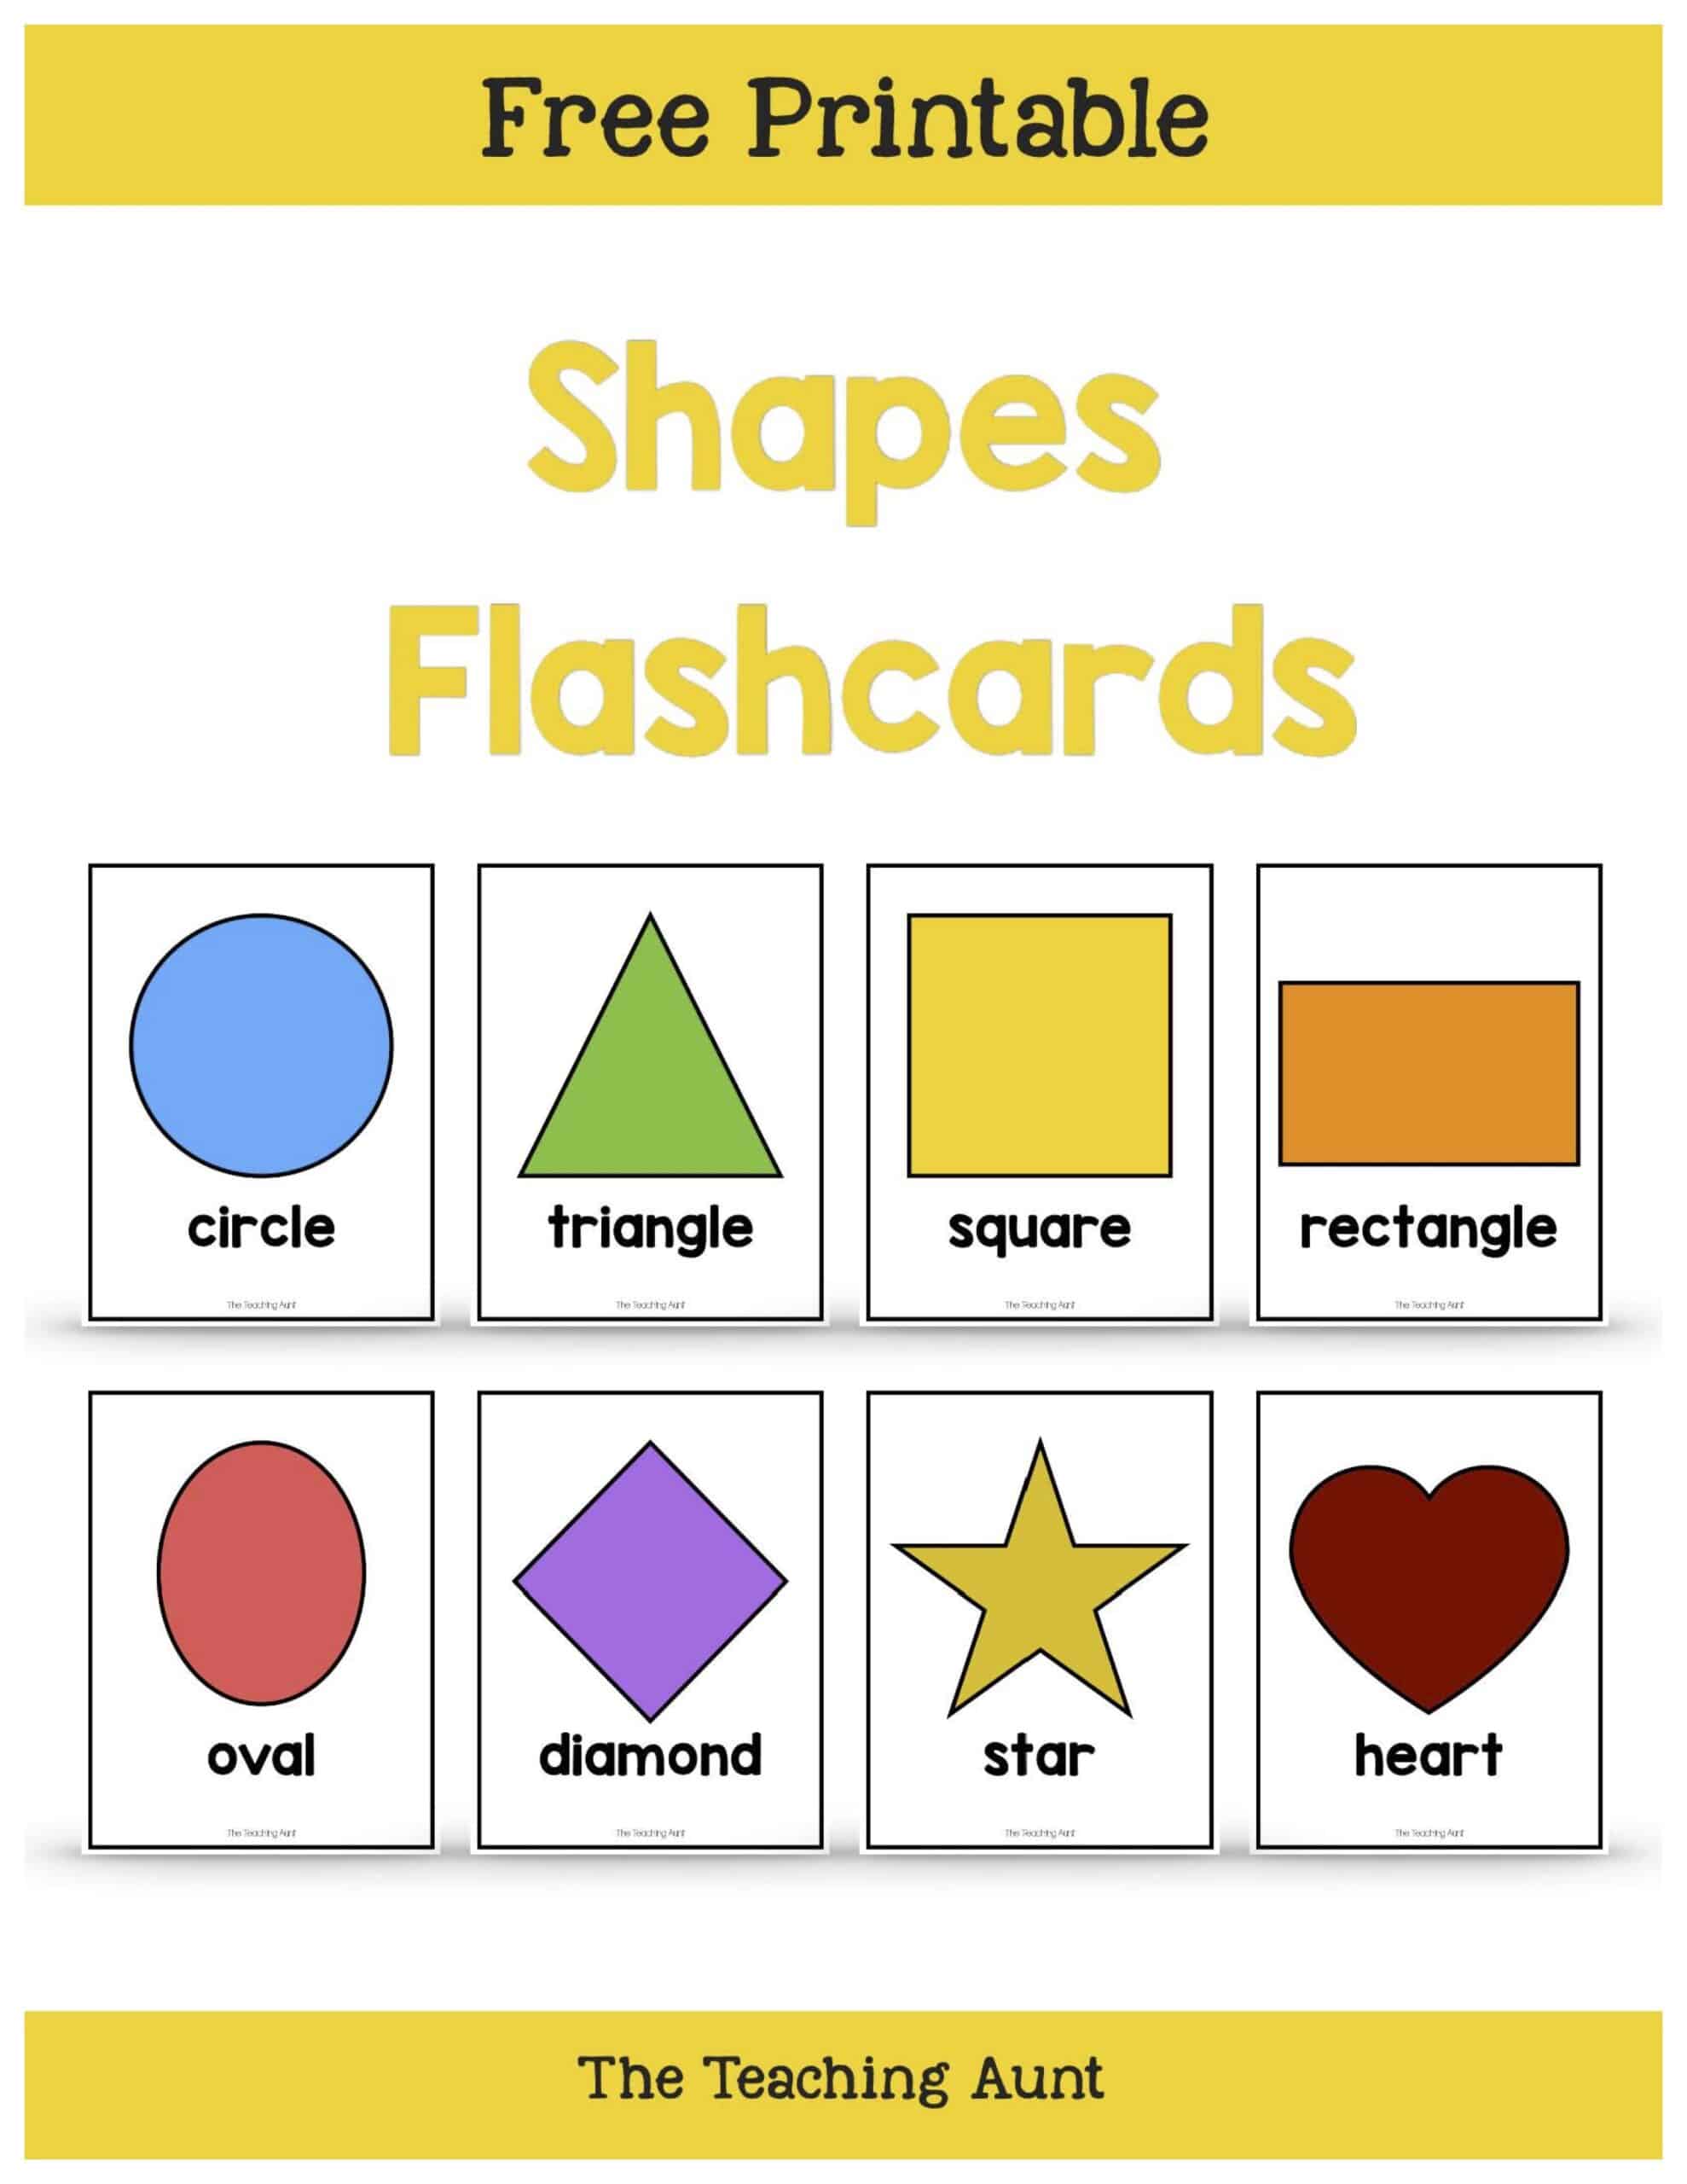 Basic Shapes Flashcards Free Printable